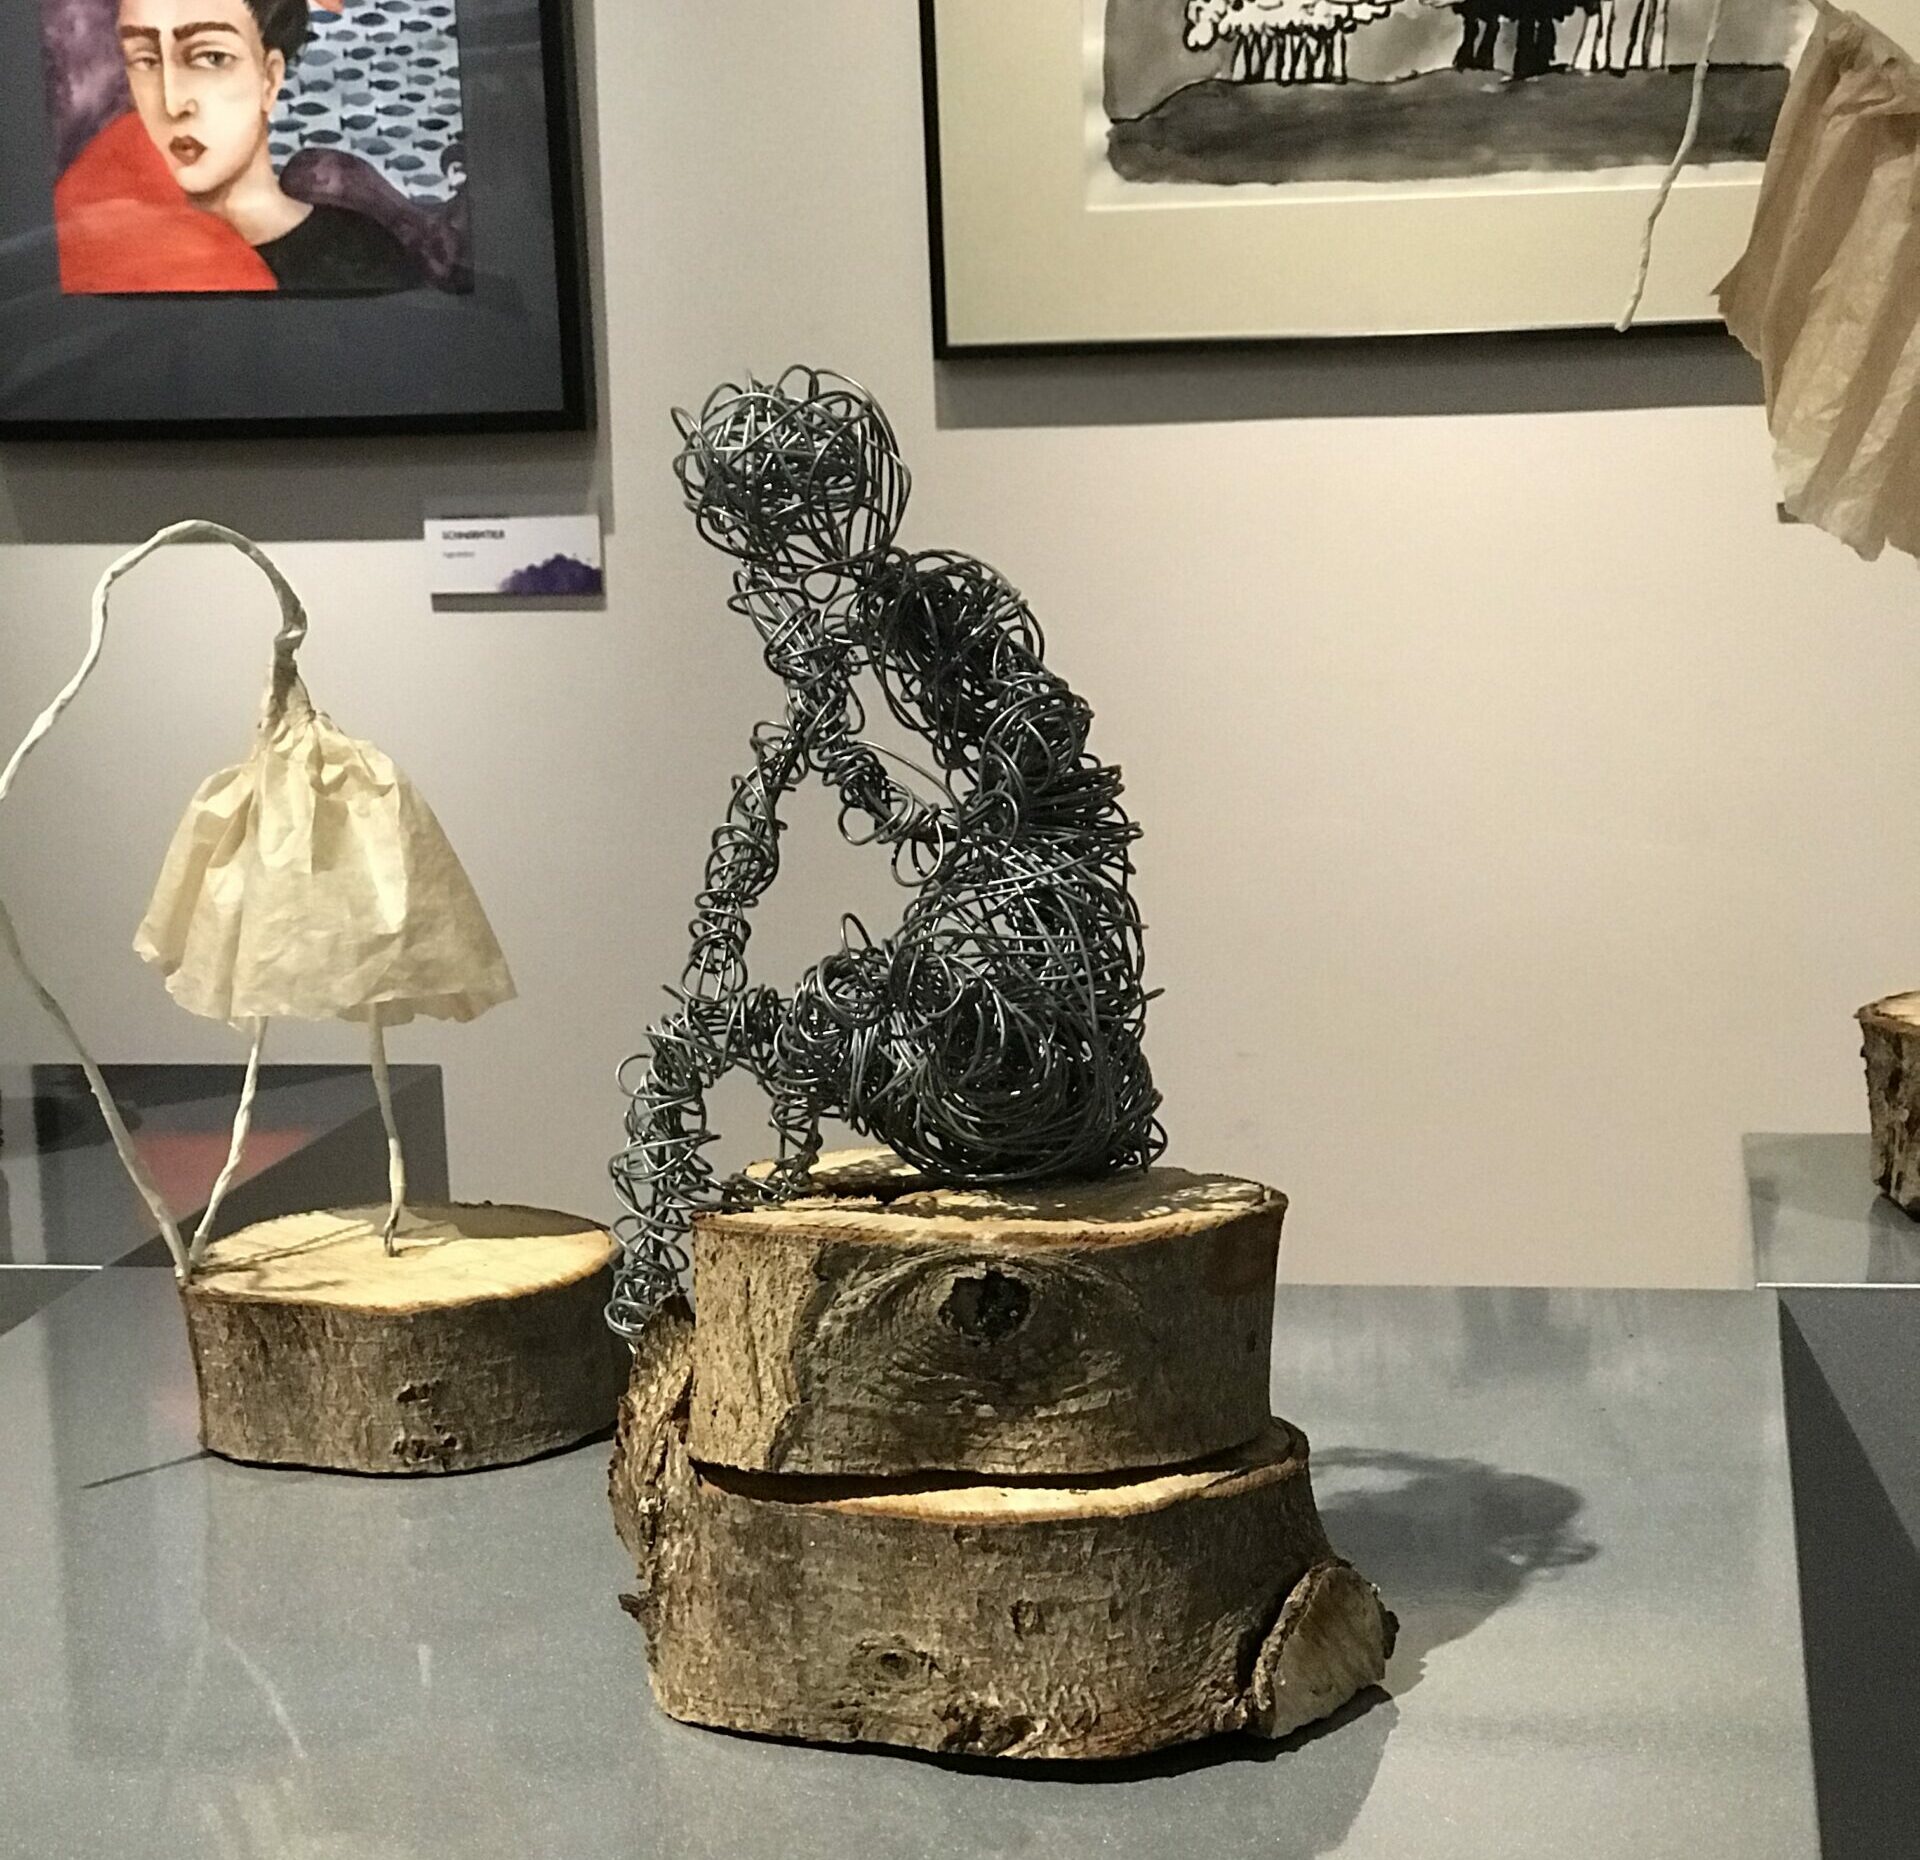 Blick in eine Ausstellung, im Vordergrund aus Draht geformte, sitzende Plastik auf einem Sockel aus Holzscheiben.